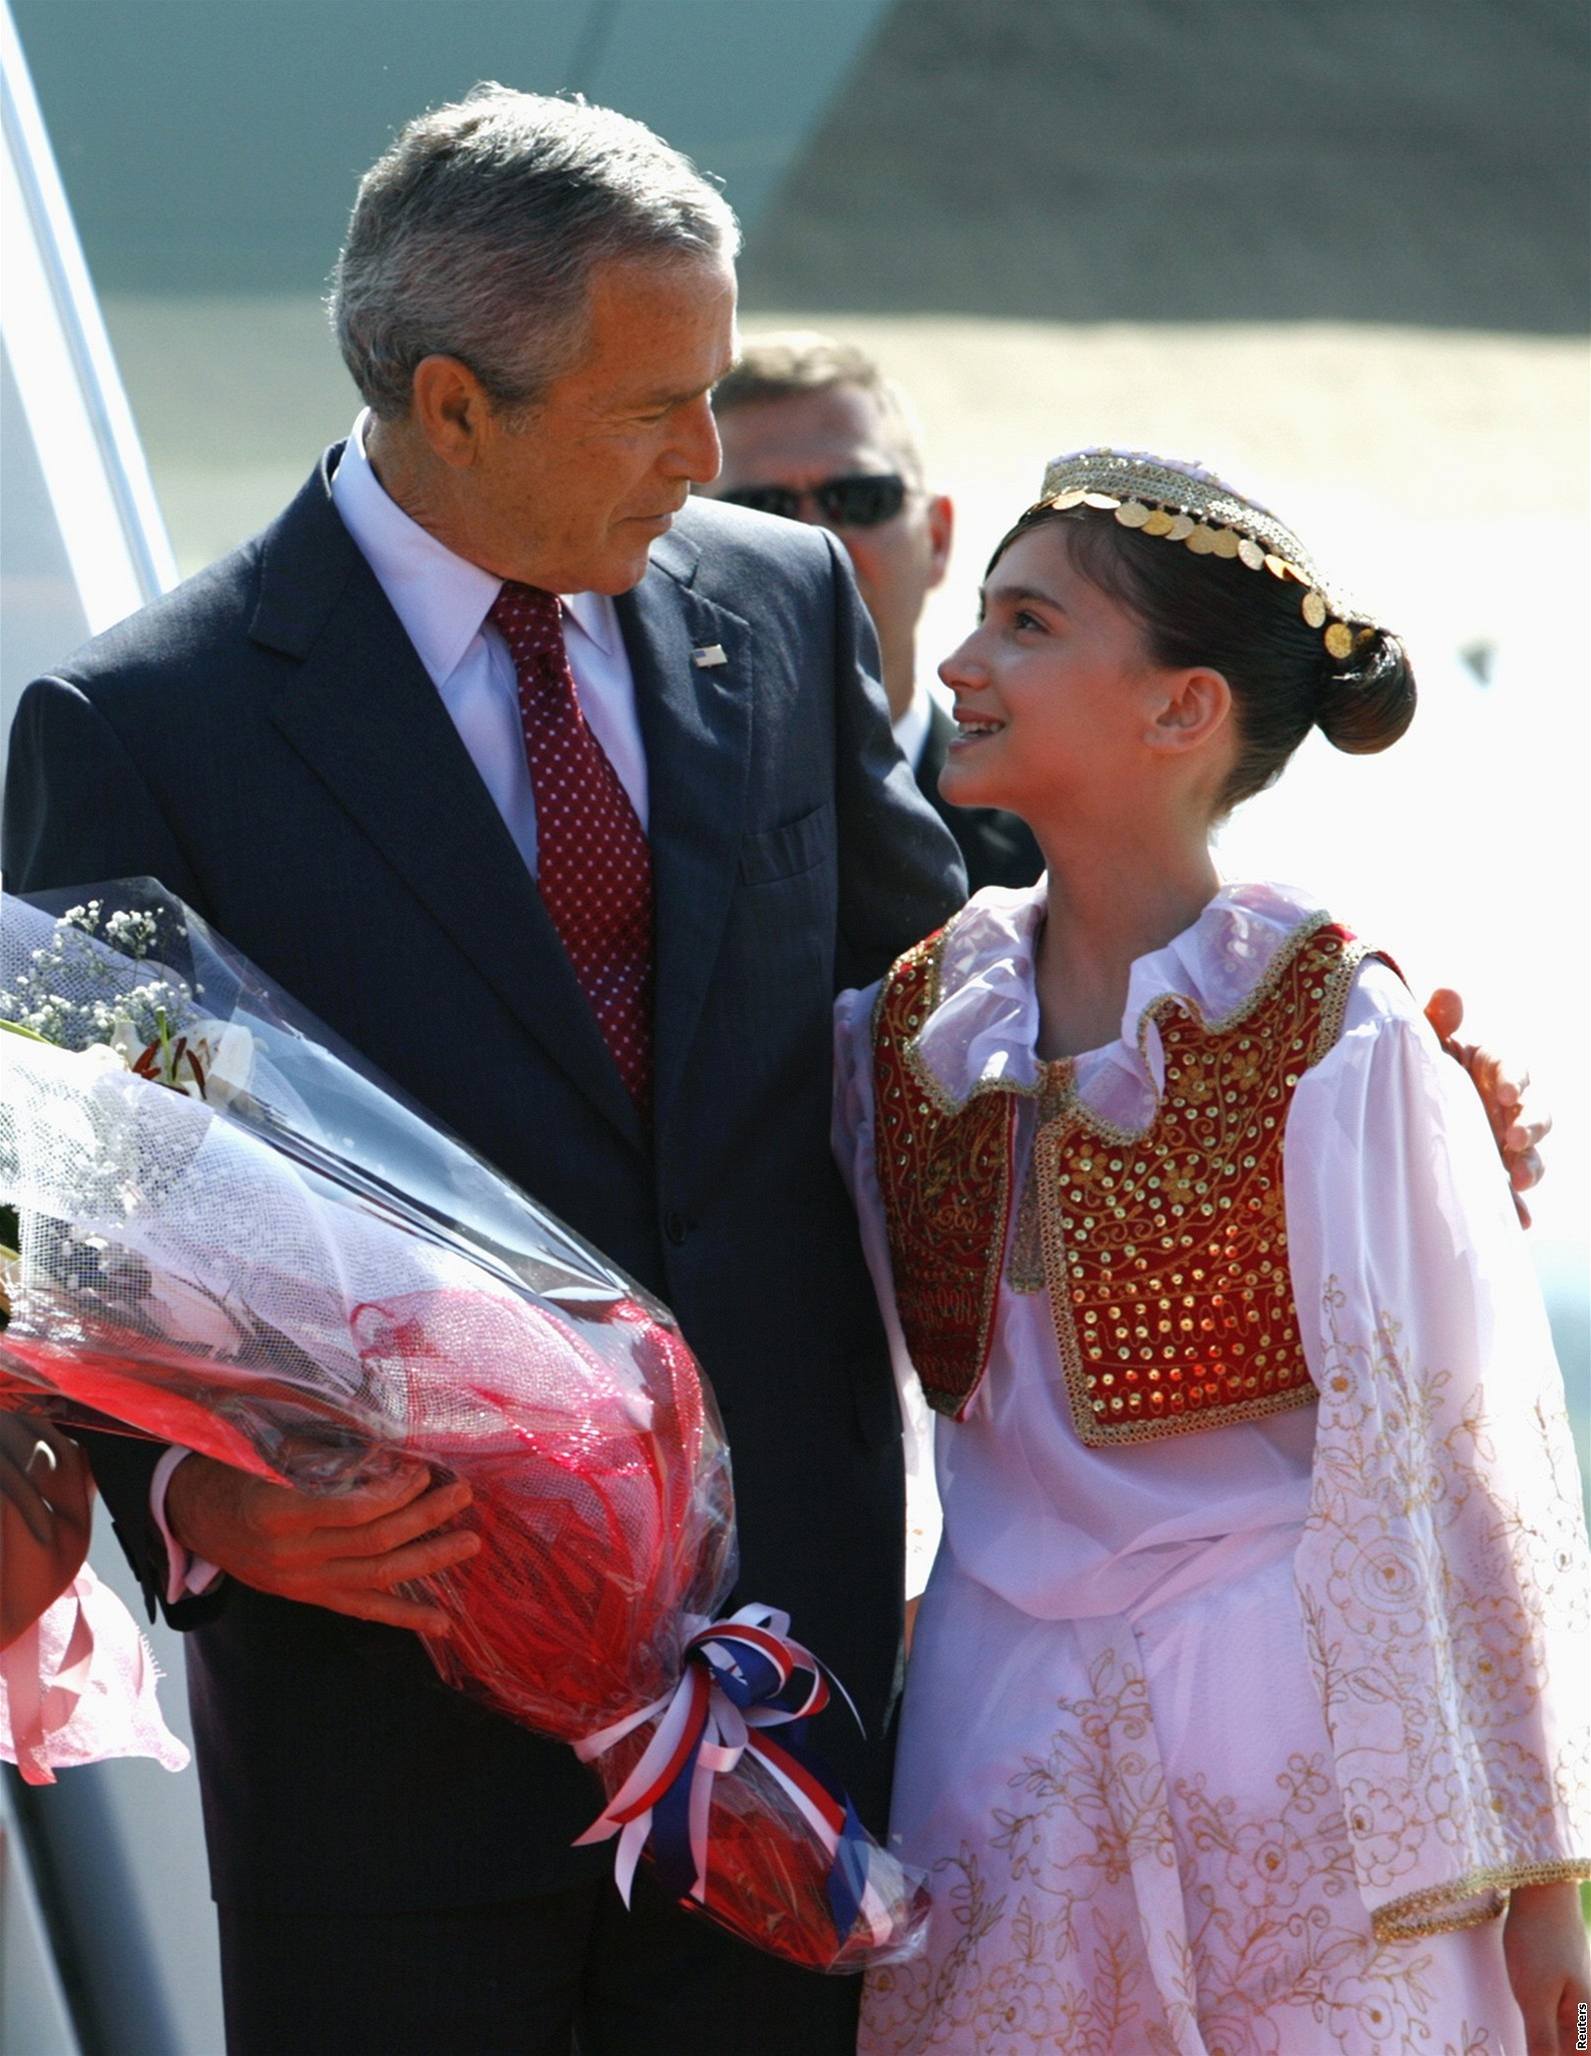 Návtva George W. Bushe v Albánii